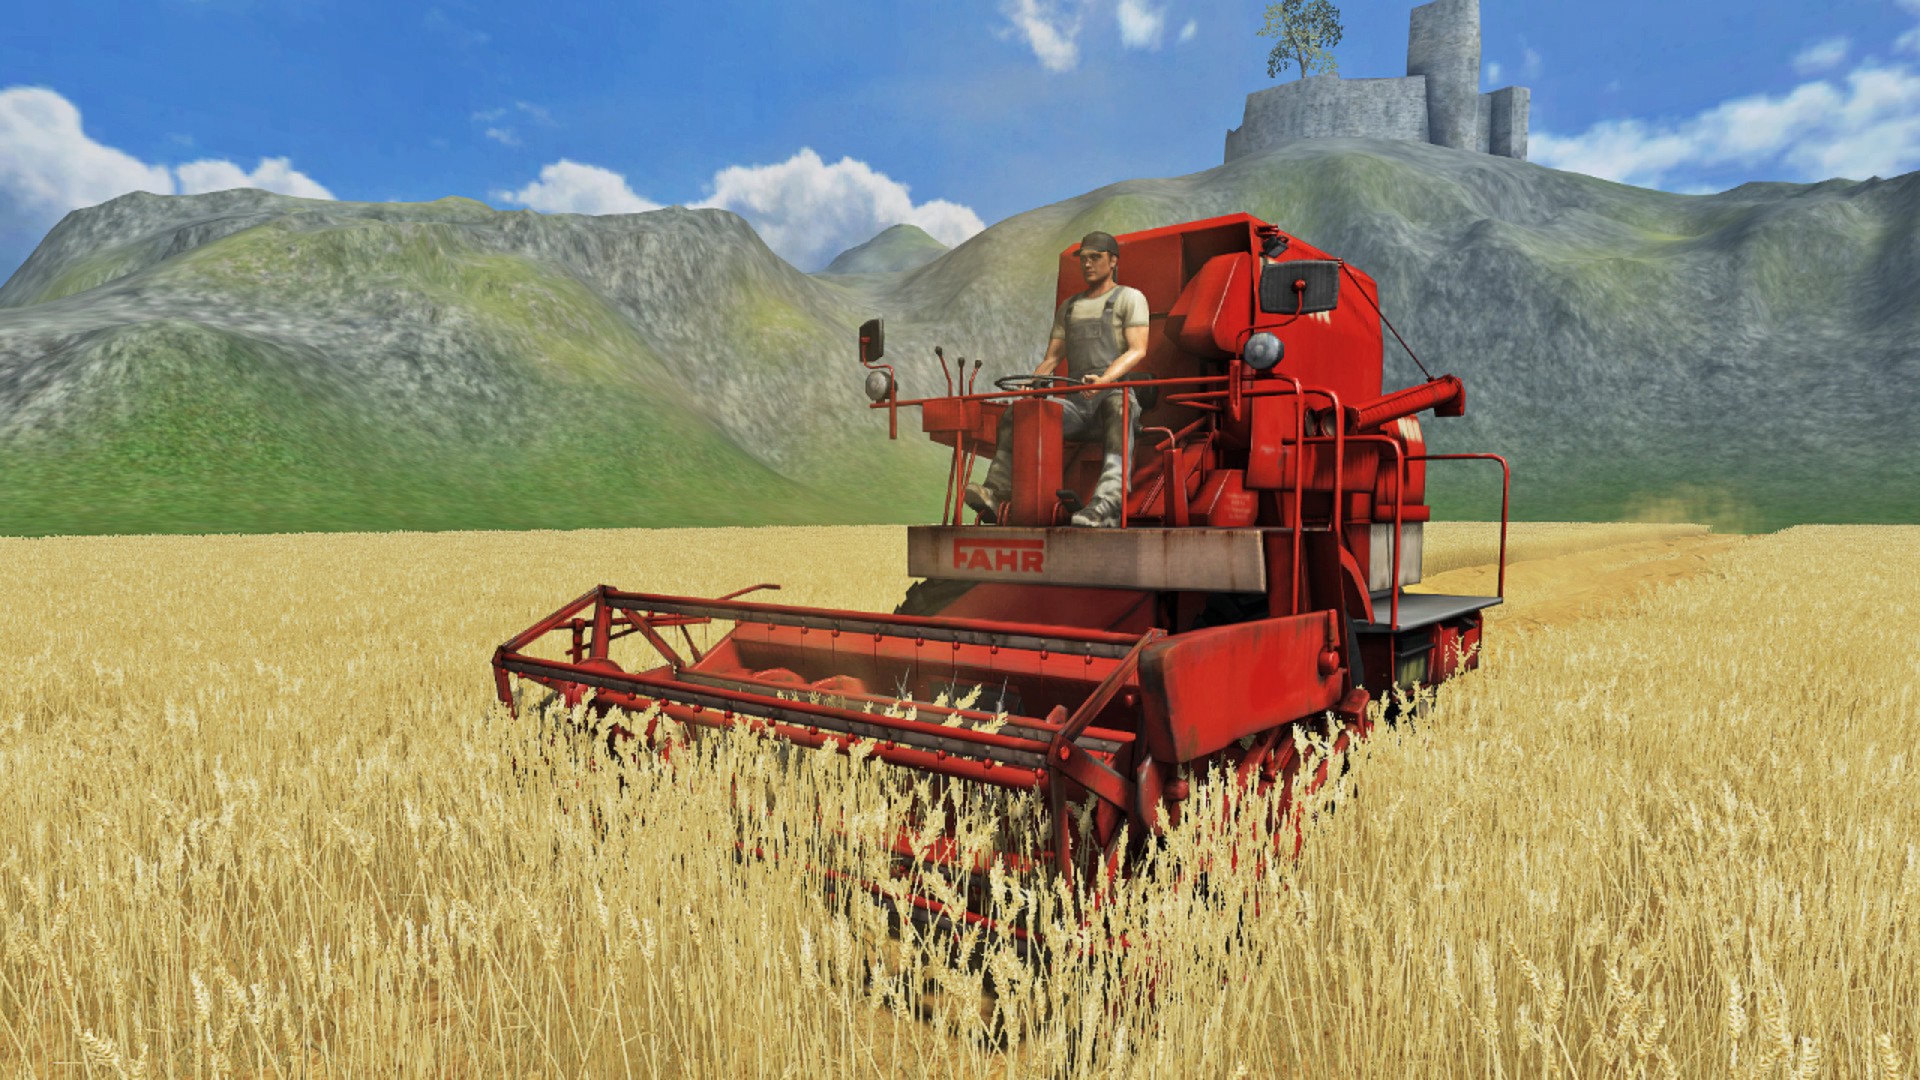 farming simulator13 download